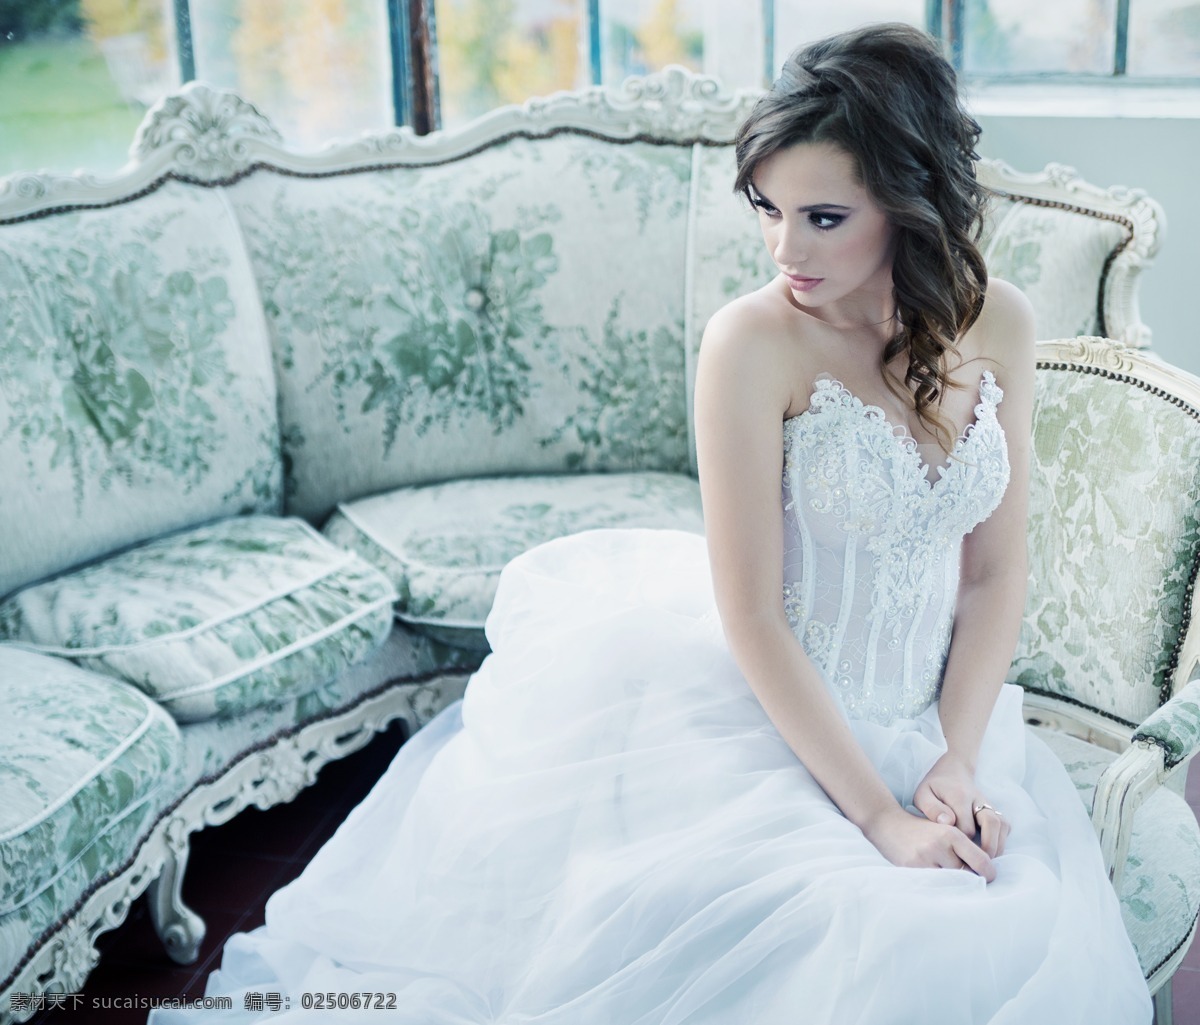 坐在 沙发 上 美丽 新娘 婚礼 婚纱 情侣图片 人物图片